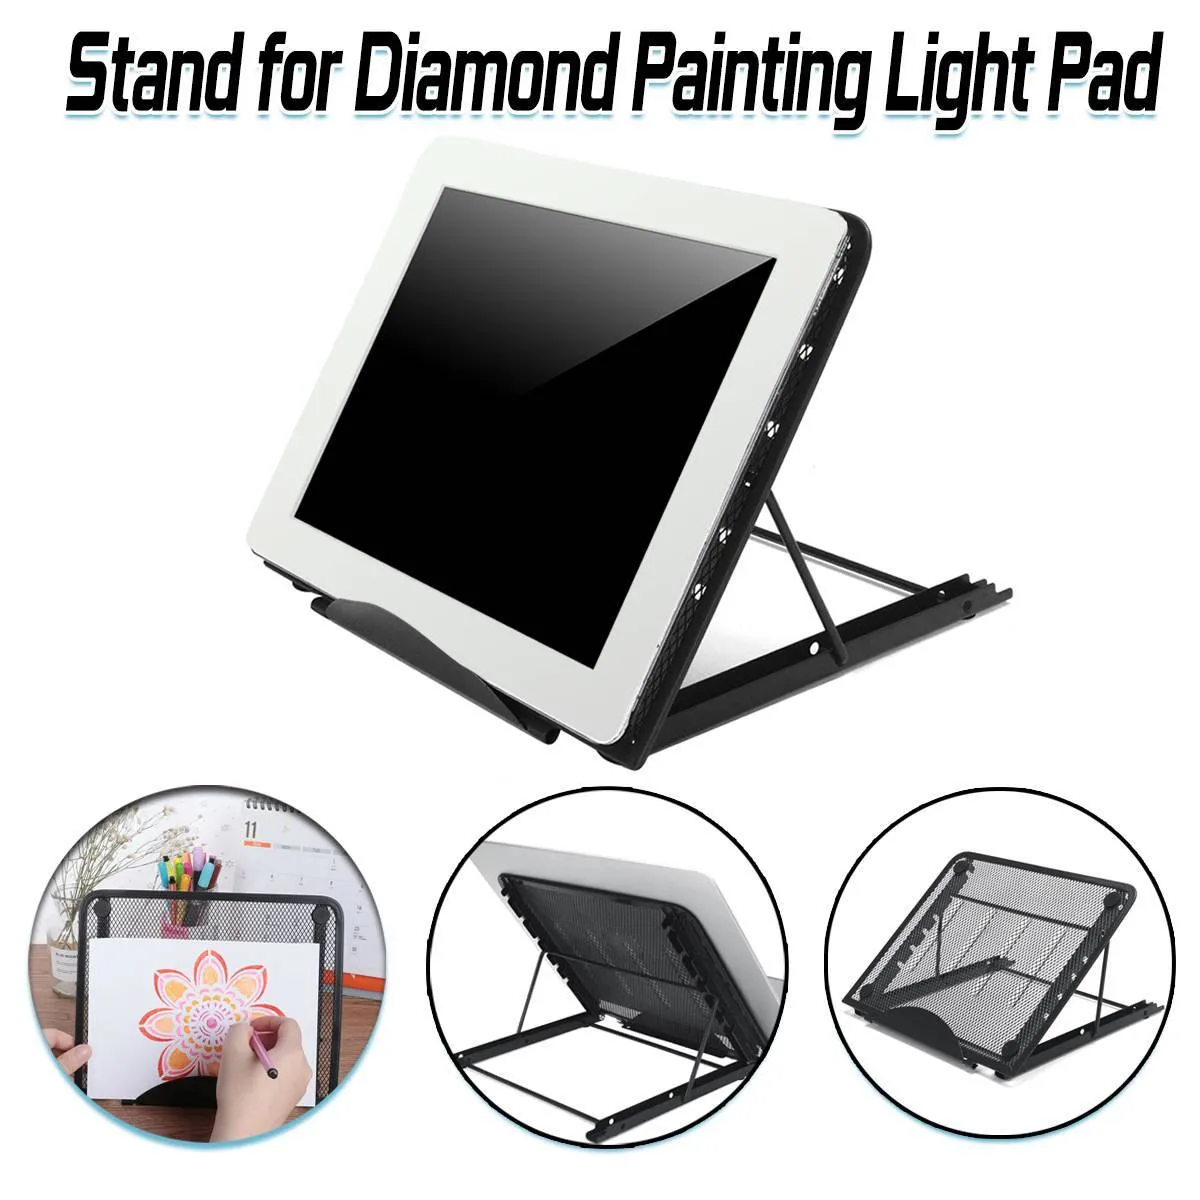 Pliable A4 LED diamant peinture support pour tampon lumineux 5D bricolage diamant broderie point de croix accessoires 6 niveau livre support de tablette C15226647